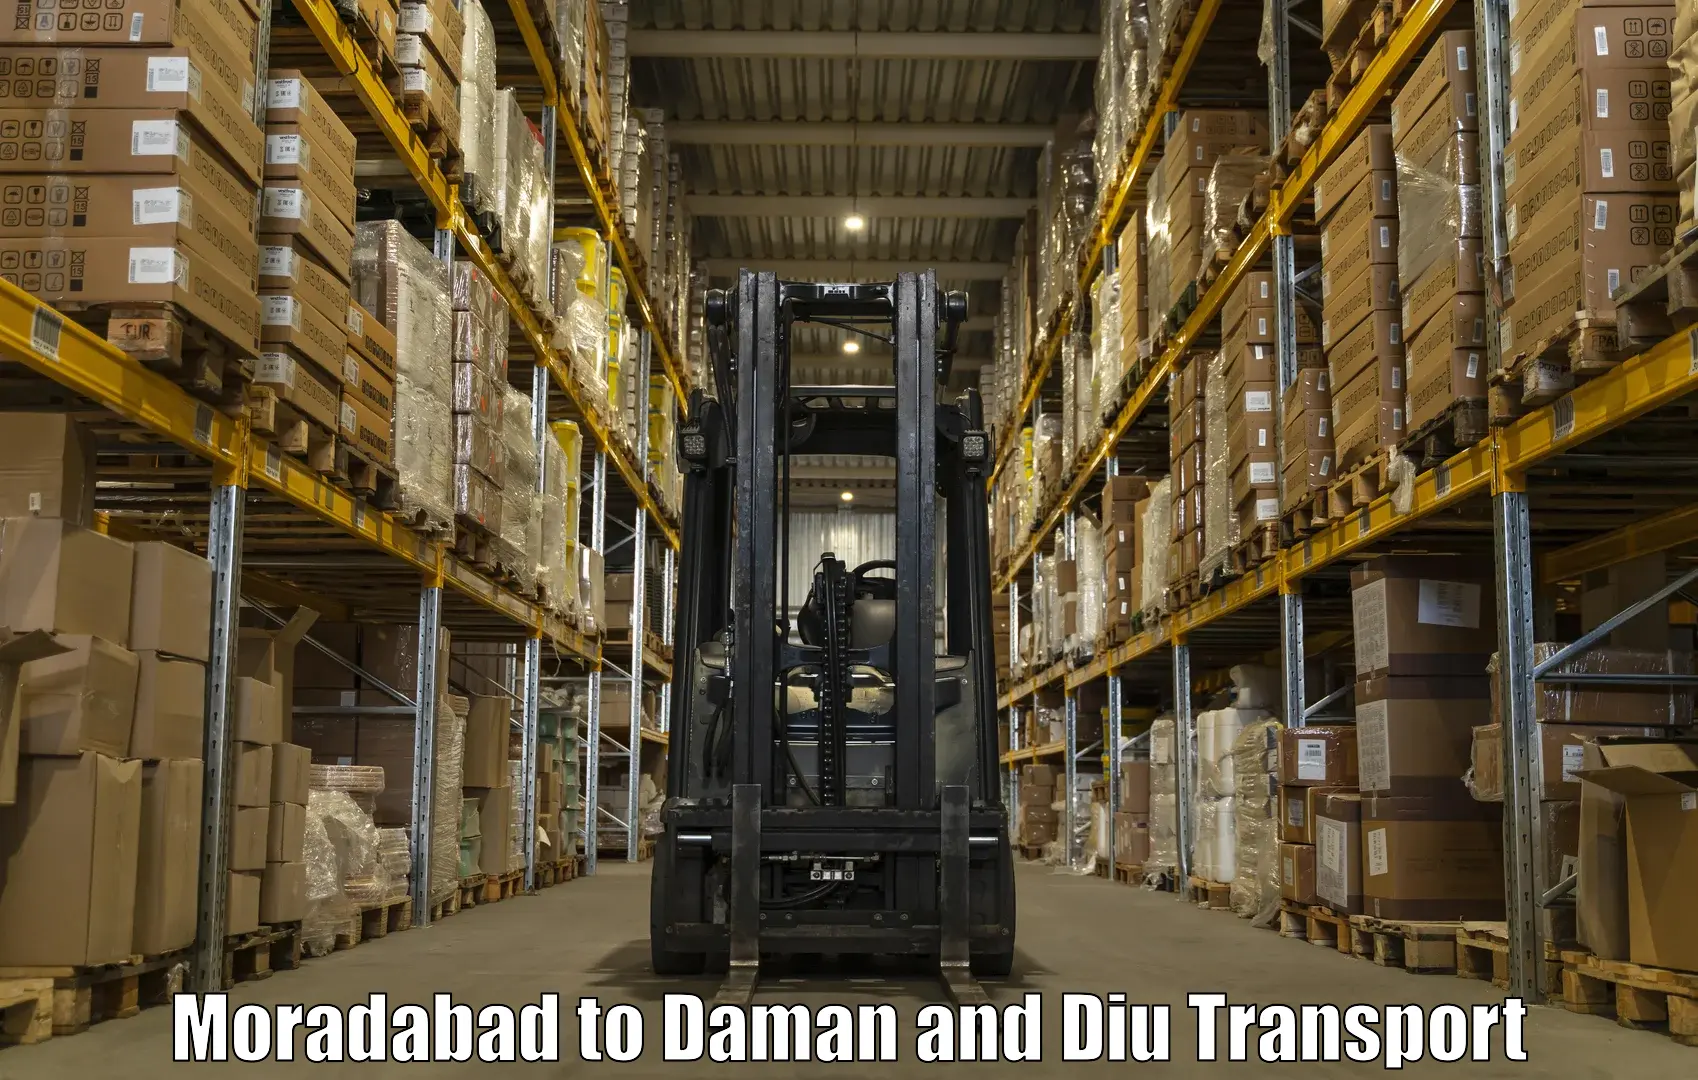 Air freight transport services Moradabad to Daman and Diu